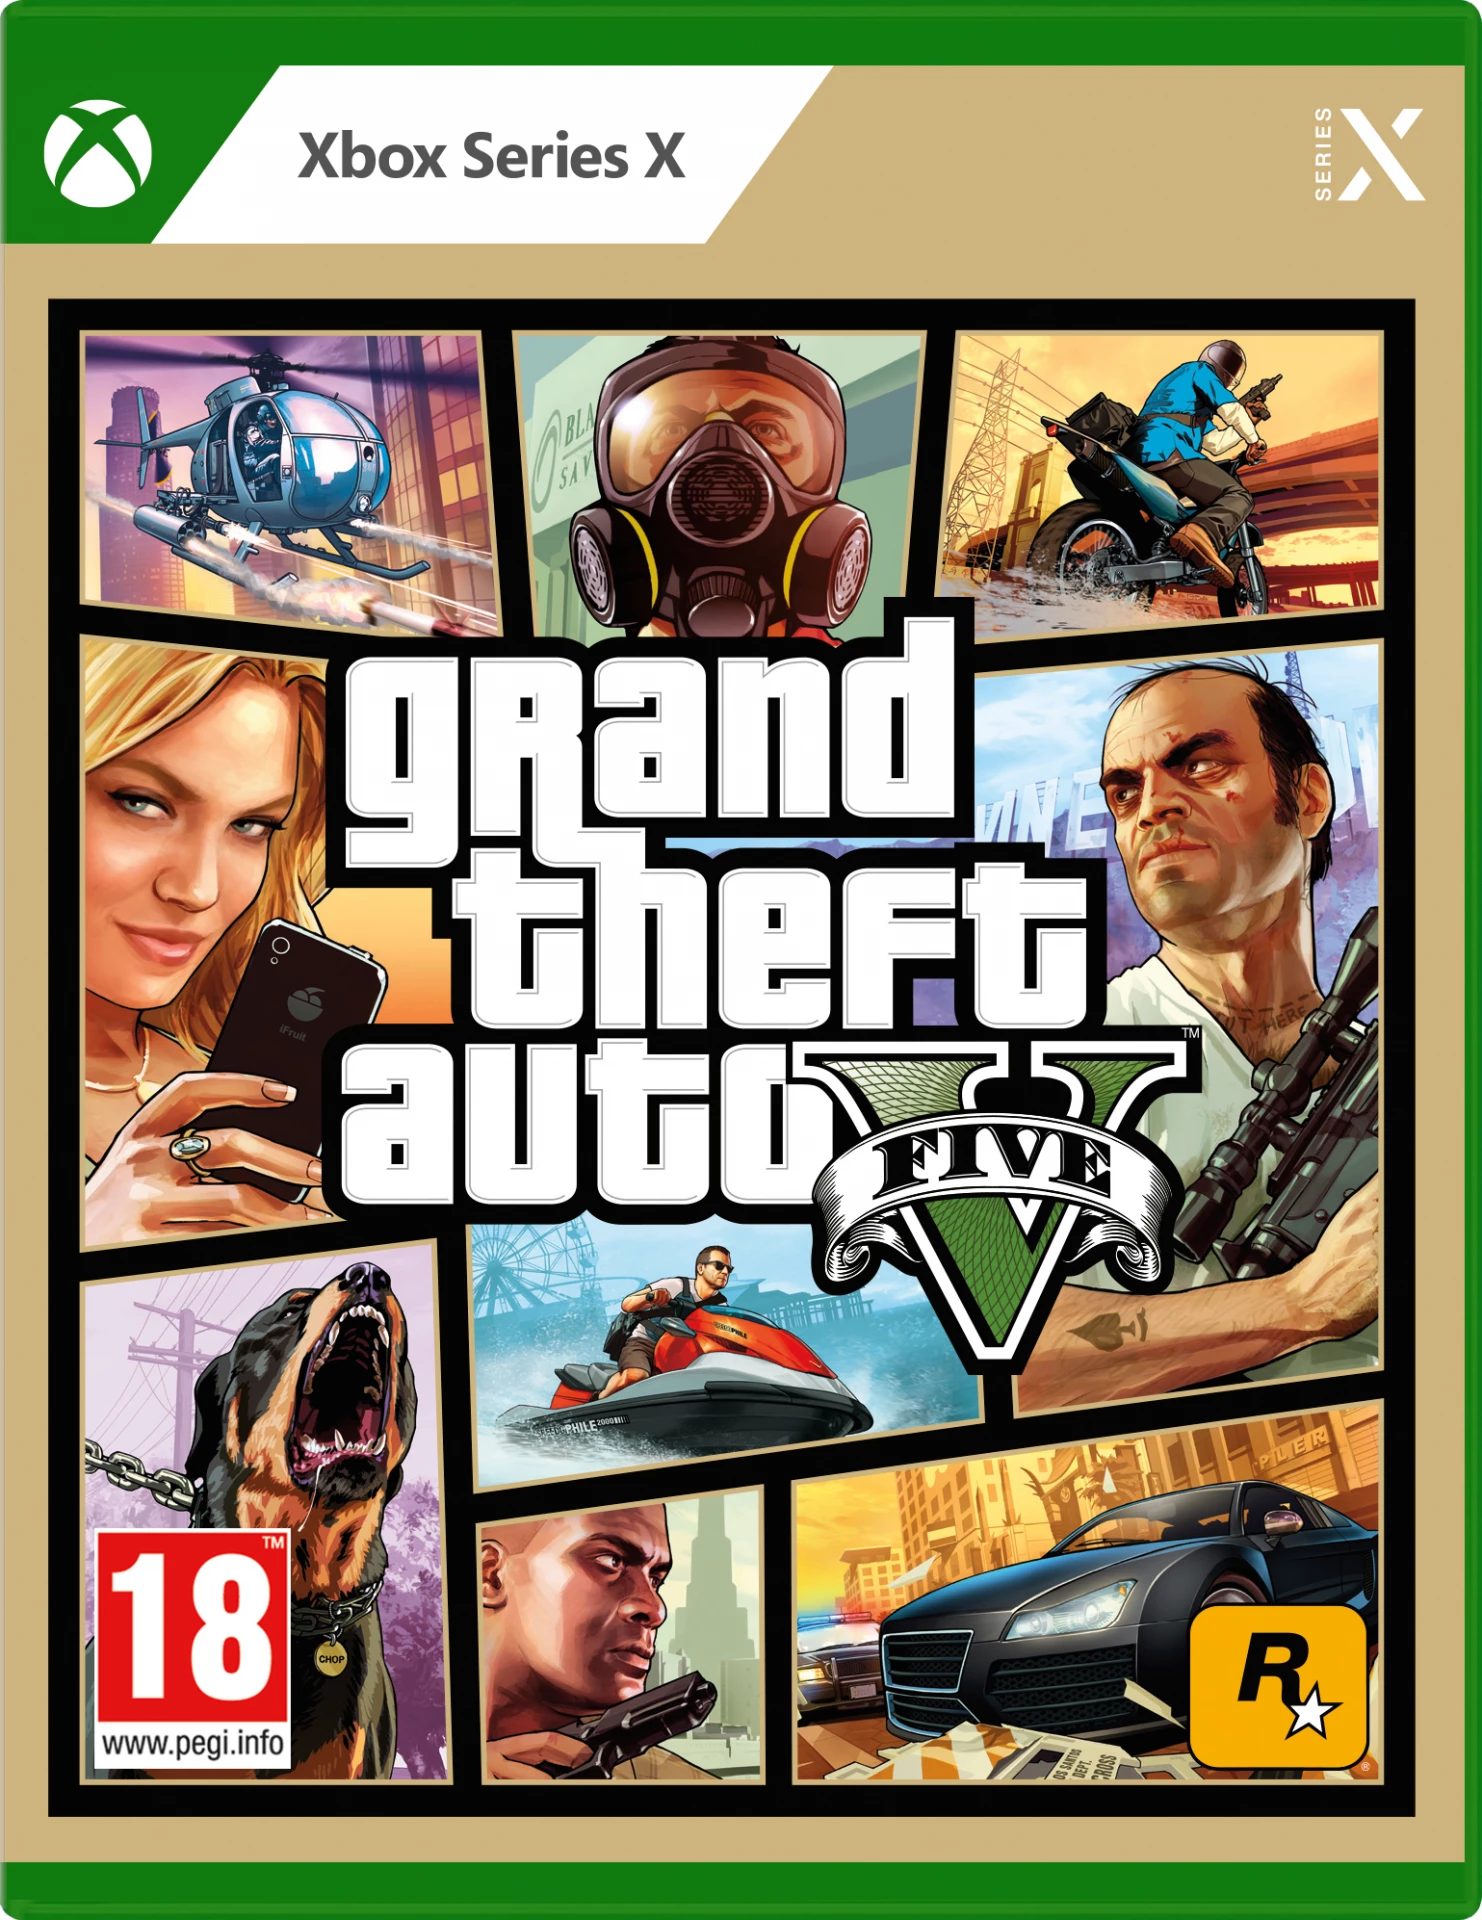 Grand Theft Auto 5 (GTA V) voor de Xbox Series S/X kopen op nedgame.nl